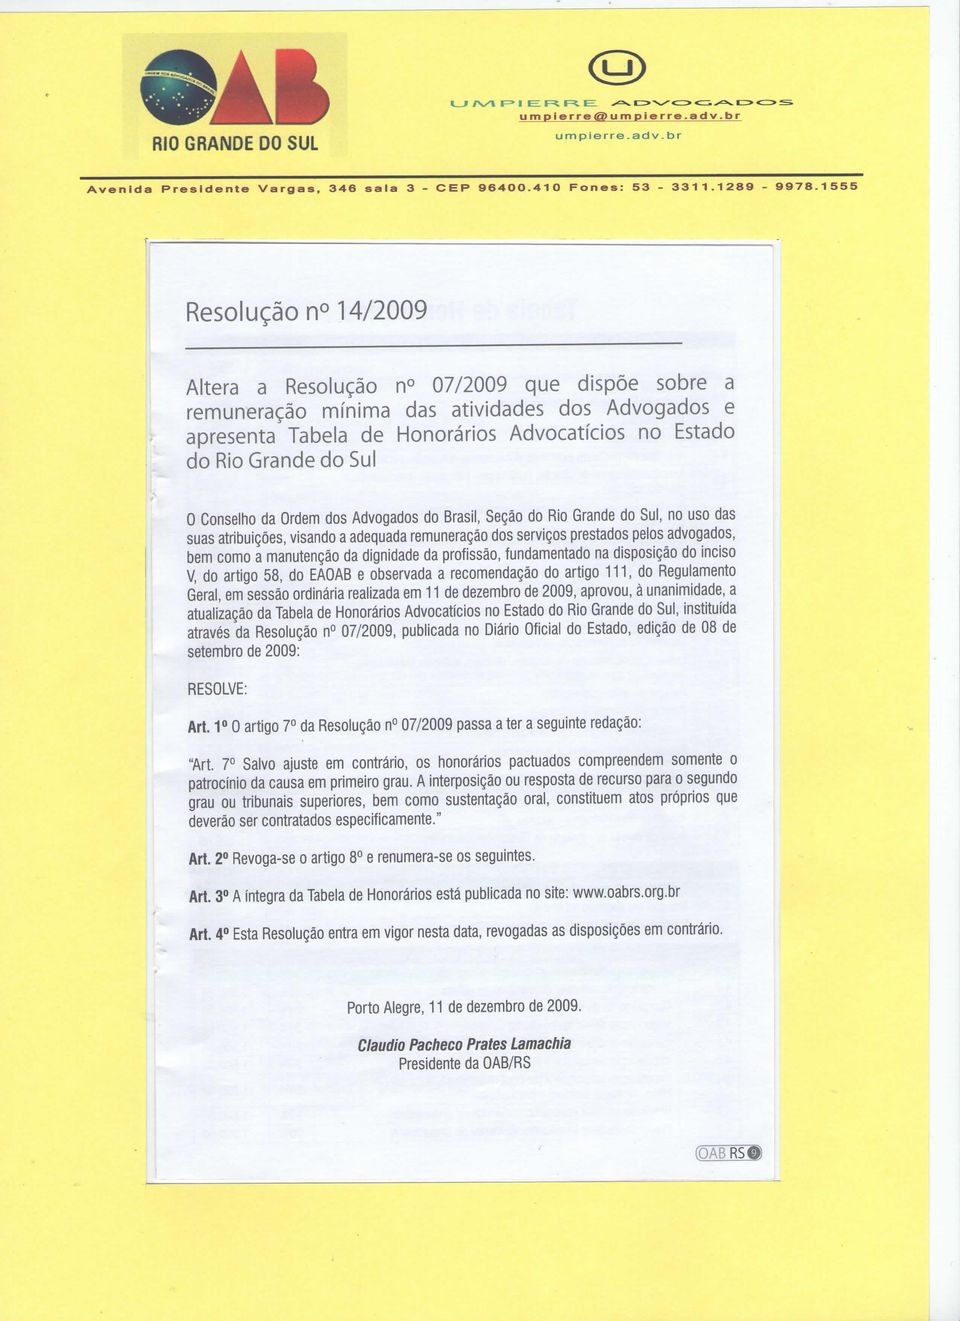 Conselho da Ordem dos Advogados do Brasil, Seção do Rio Grande do Sul, no uso das suas atribuições, visando a adequada remuneração dos serviços prestados pelos advogados, bem como a manutenção da